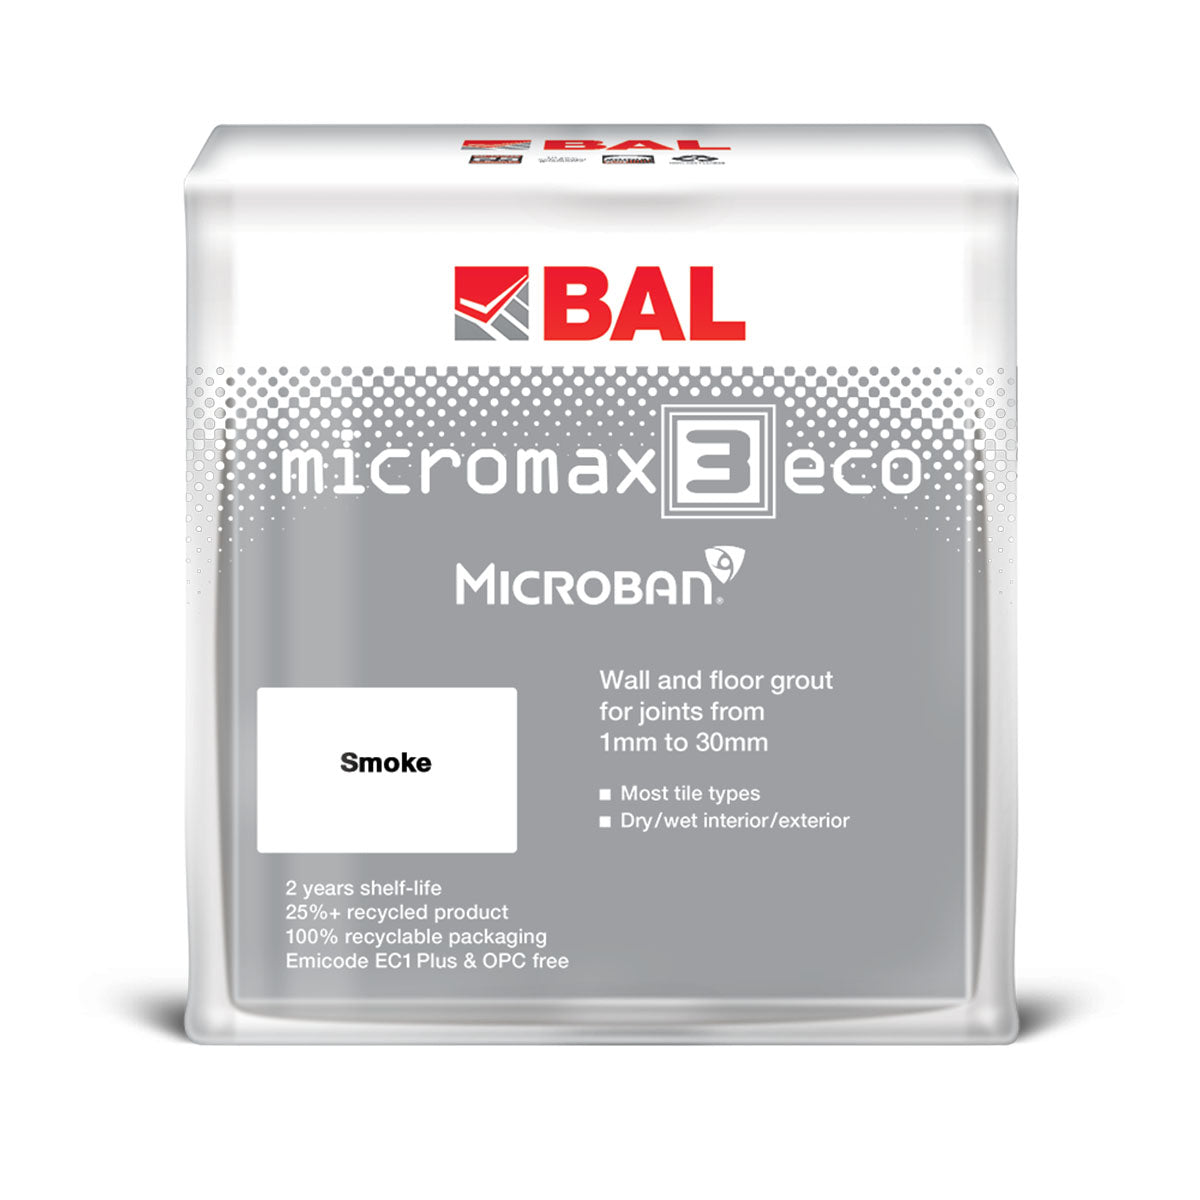 BAL micromax 3 eco wall and floor tile adhesive smoke